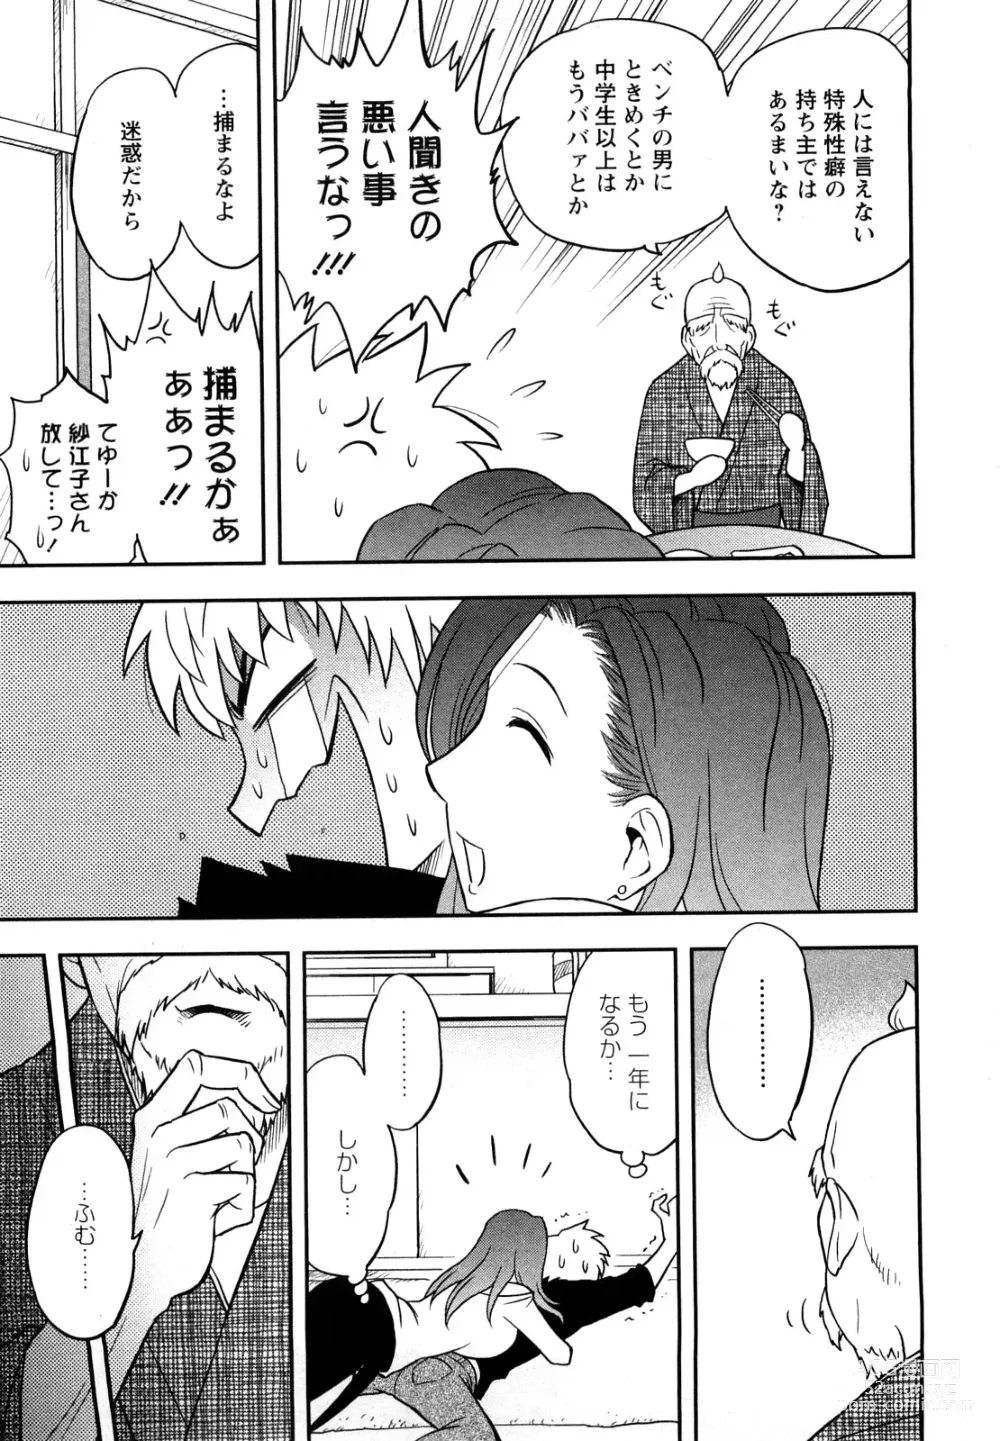 Page 13 of manga Megamisou Panic!